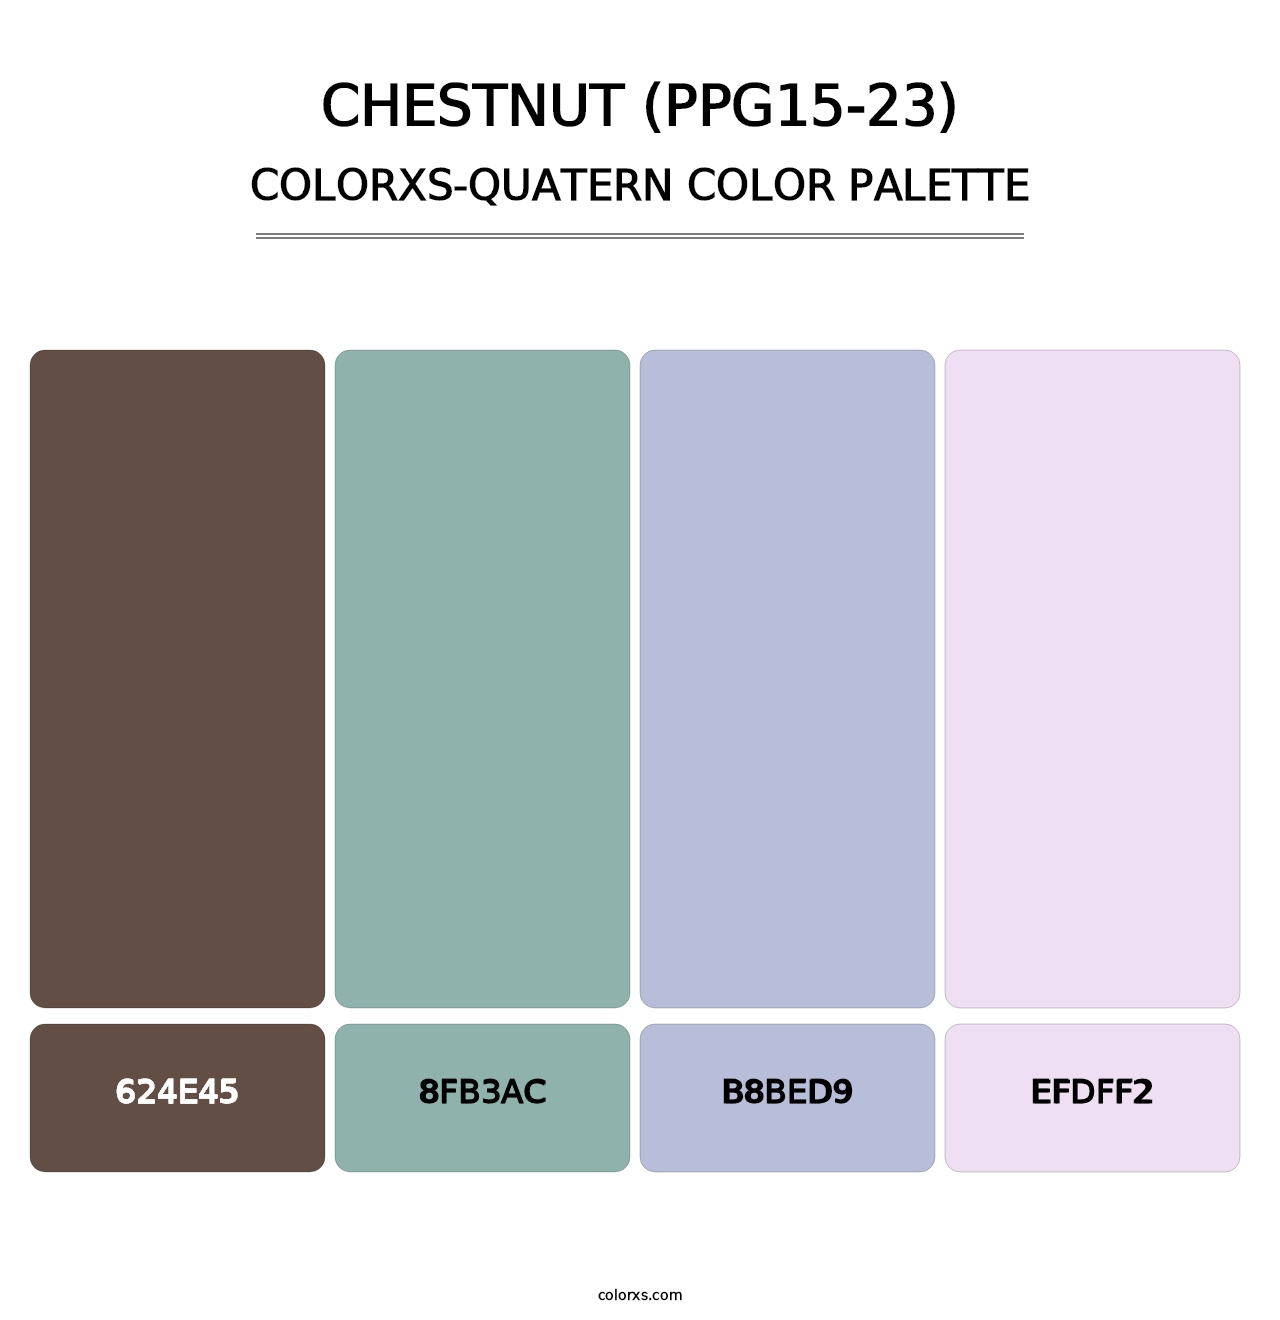 Chestnut (PPG15-23) - Colorxs Quatern Palette